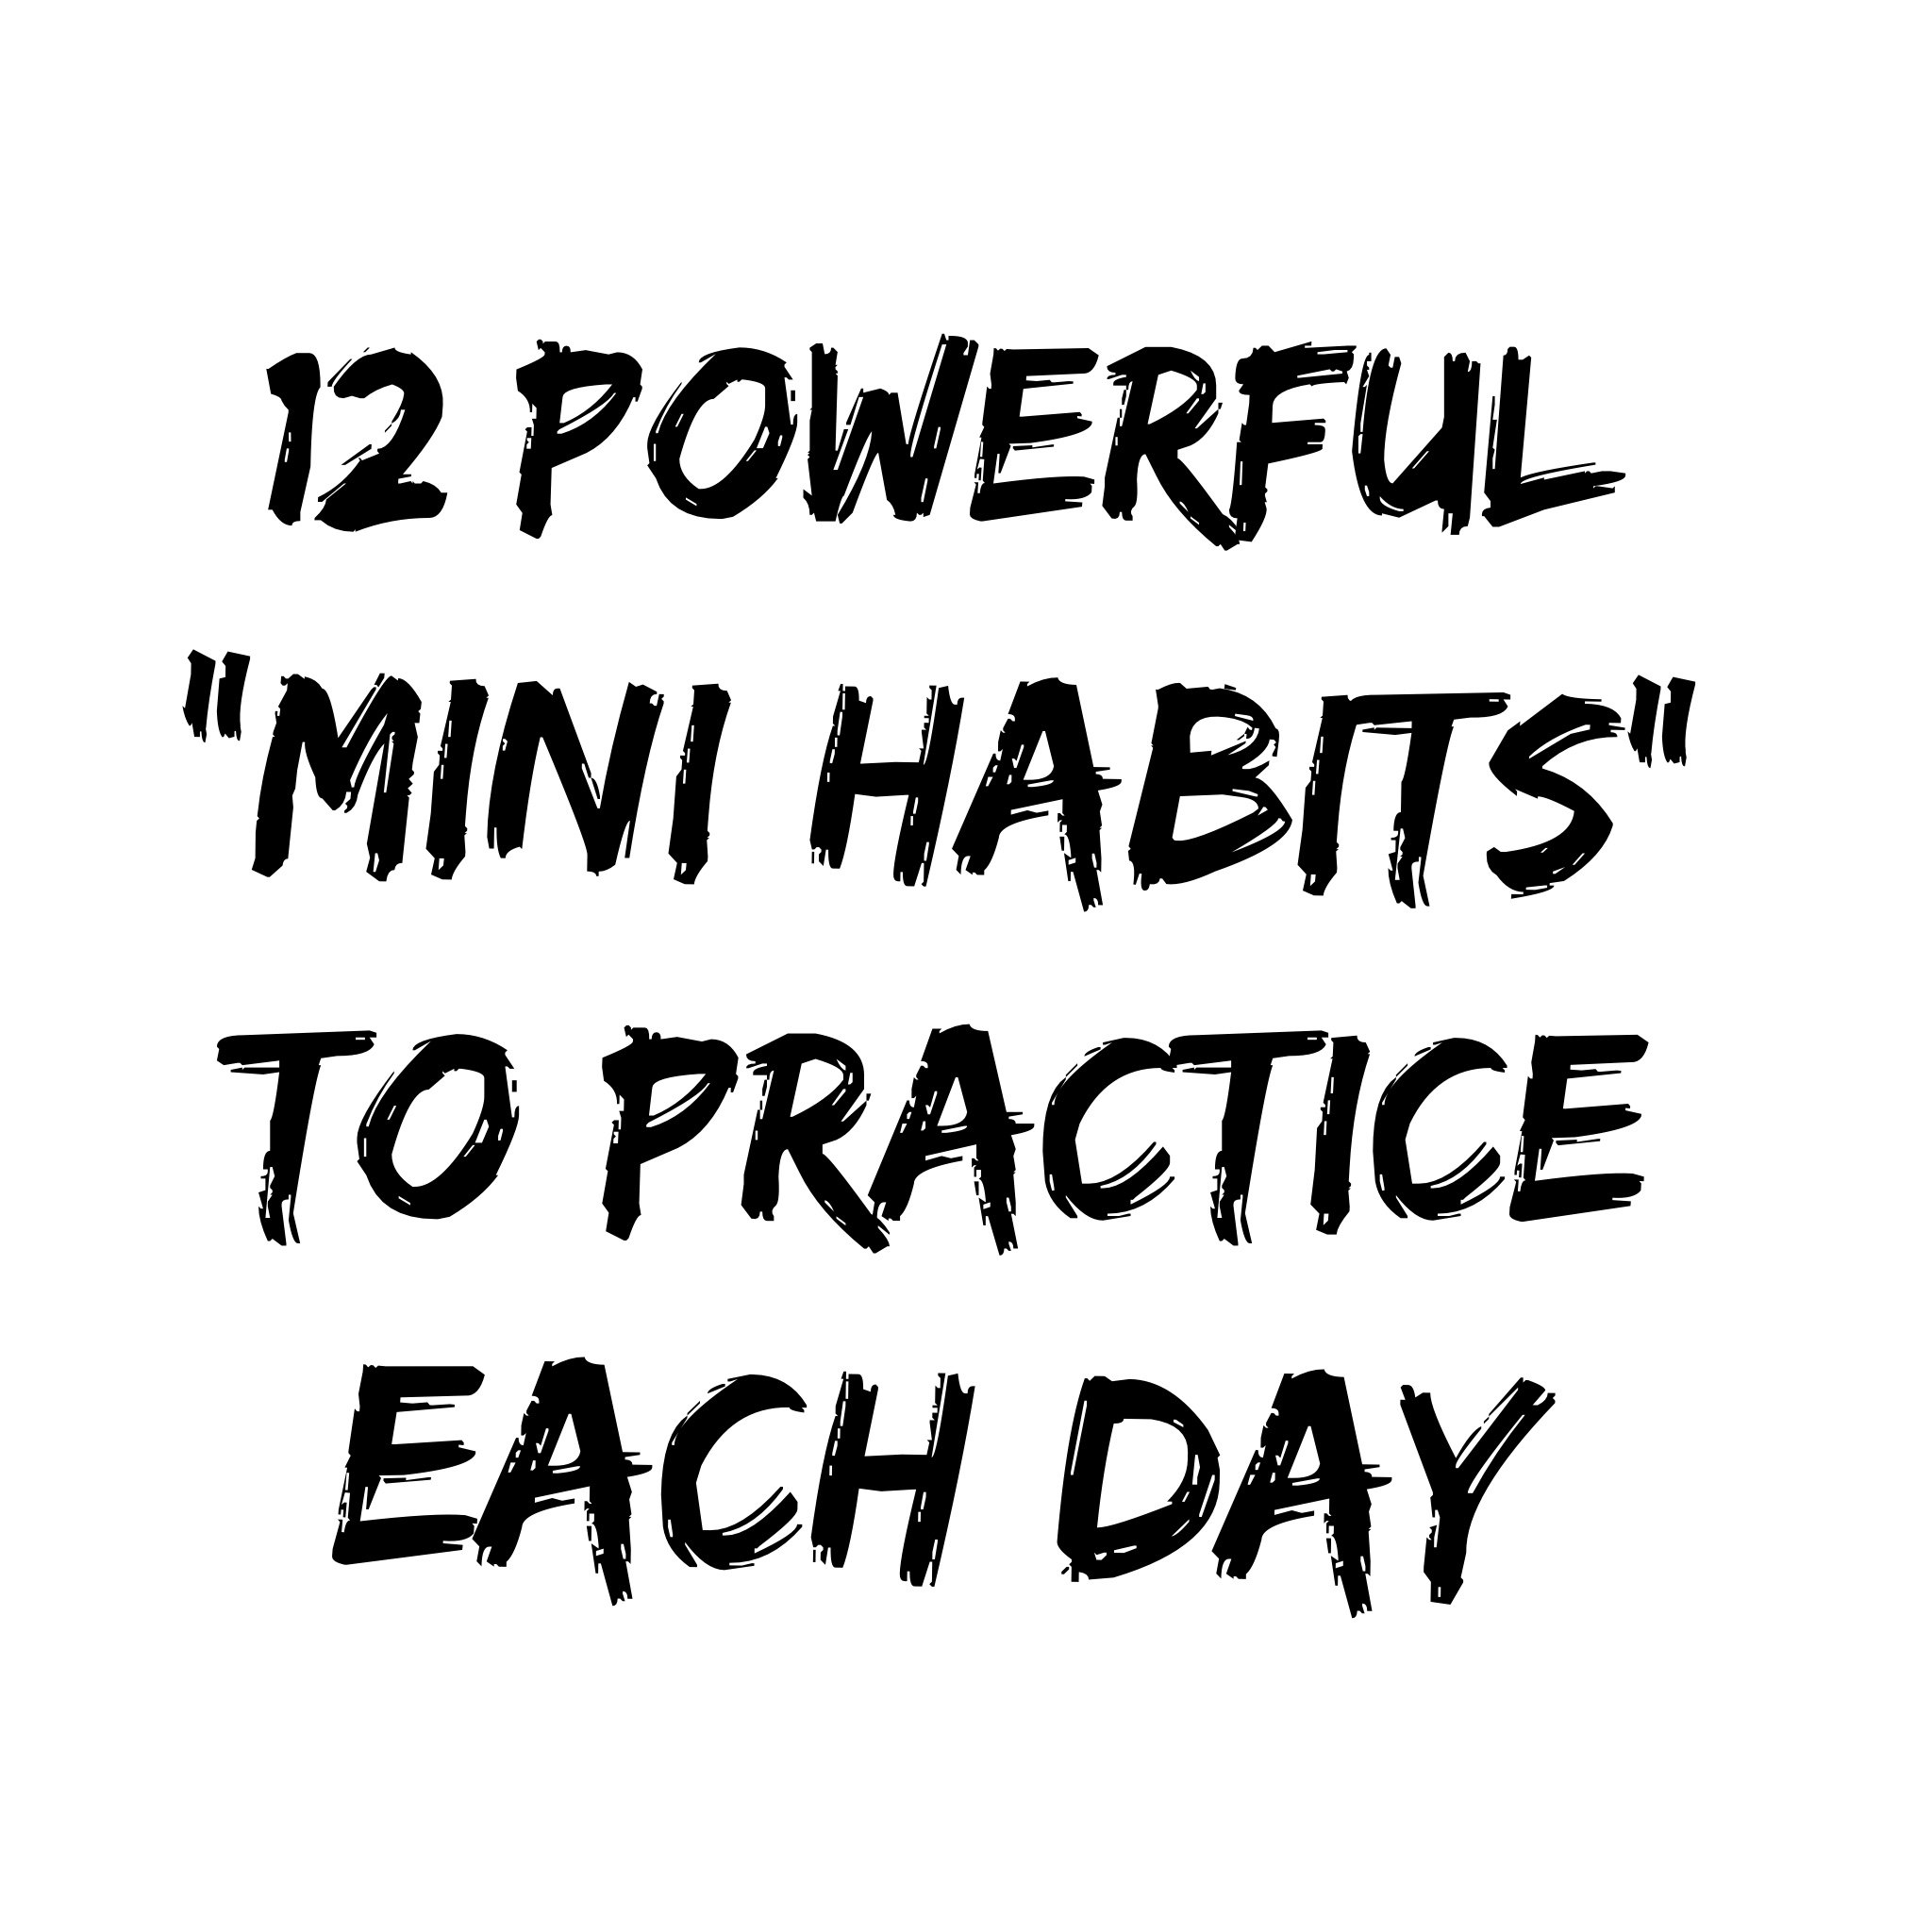 mini habits